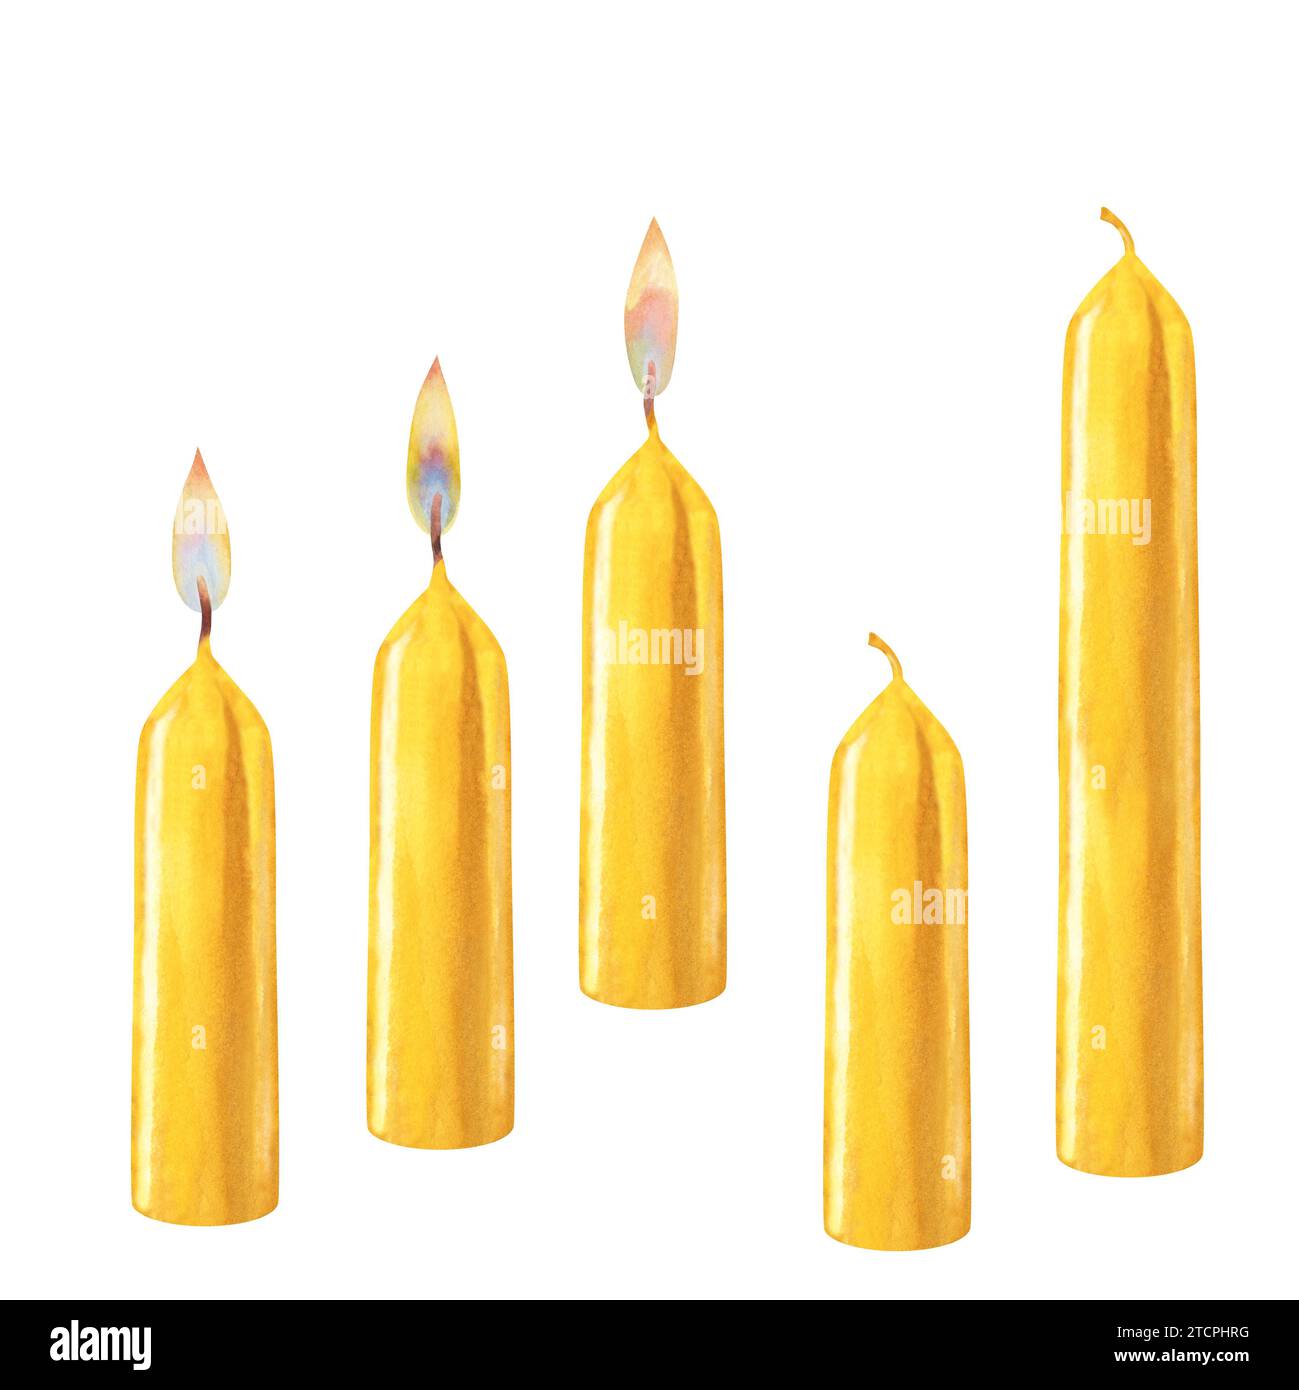 Aquarellgelbe vertikale kurze und lange Kerzen mit Flammen verschiedener Art und ohne Flammen für Weihnachten, Candlemas, Hochzeit, Geburtstag, Easte Stockfoto